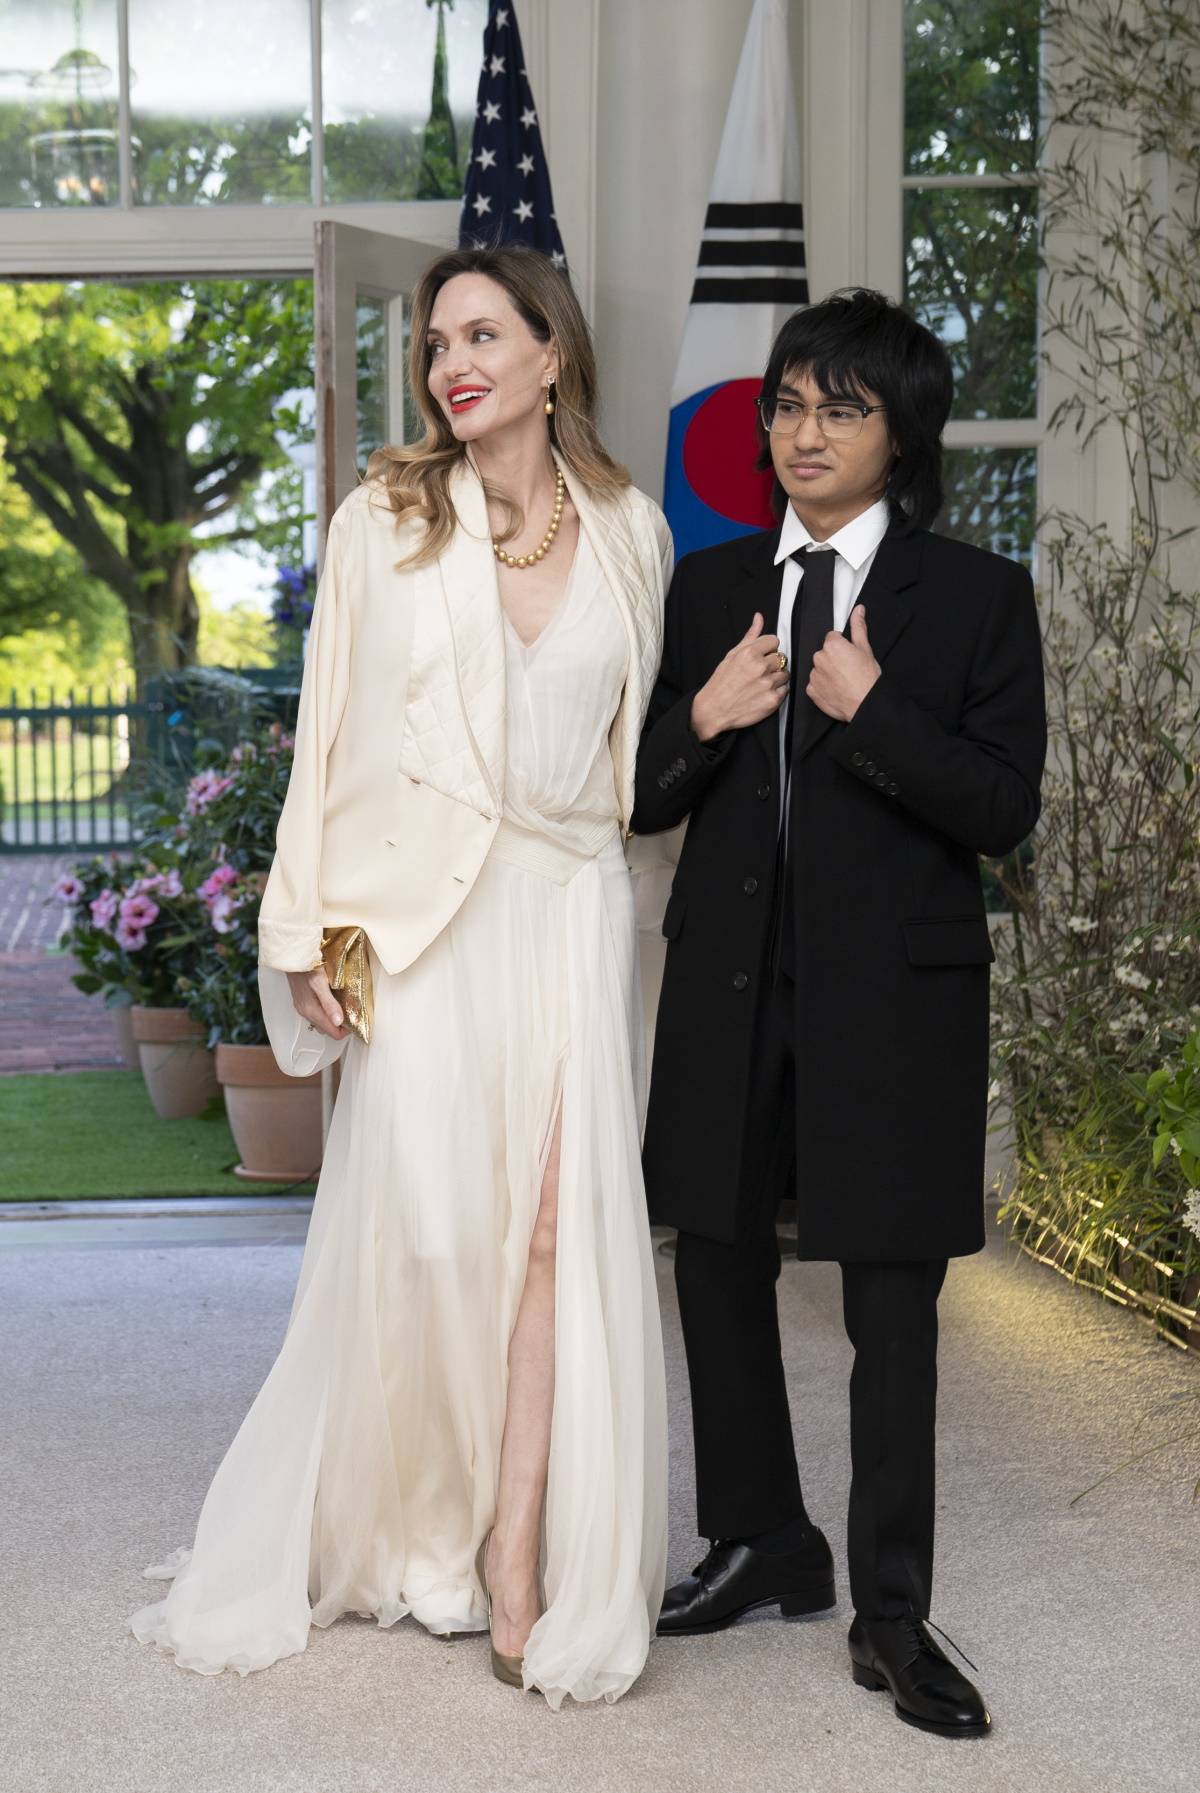 Angelina Jolie z synem Maddoxem na uroczystej kolacji w Białym Domu. Angelina Jolie zabrała syna Madoxxa na kolację zorganizowaną w Białym Domu przez parę prezydencką z okazji 70. rocznicy sojuszu Stanów Zjednoczonych z Koreą Południową.